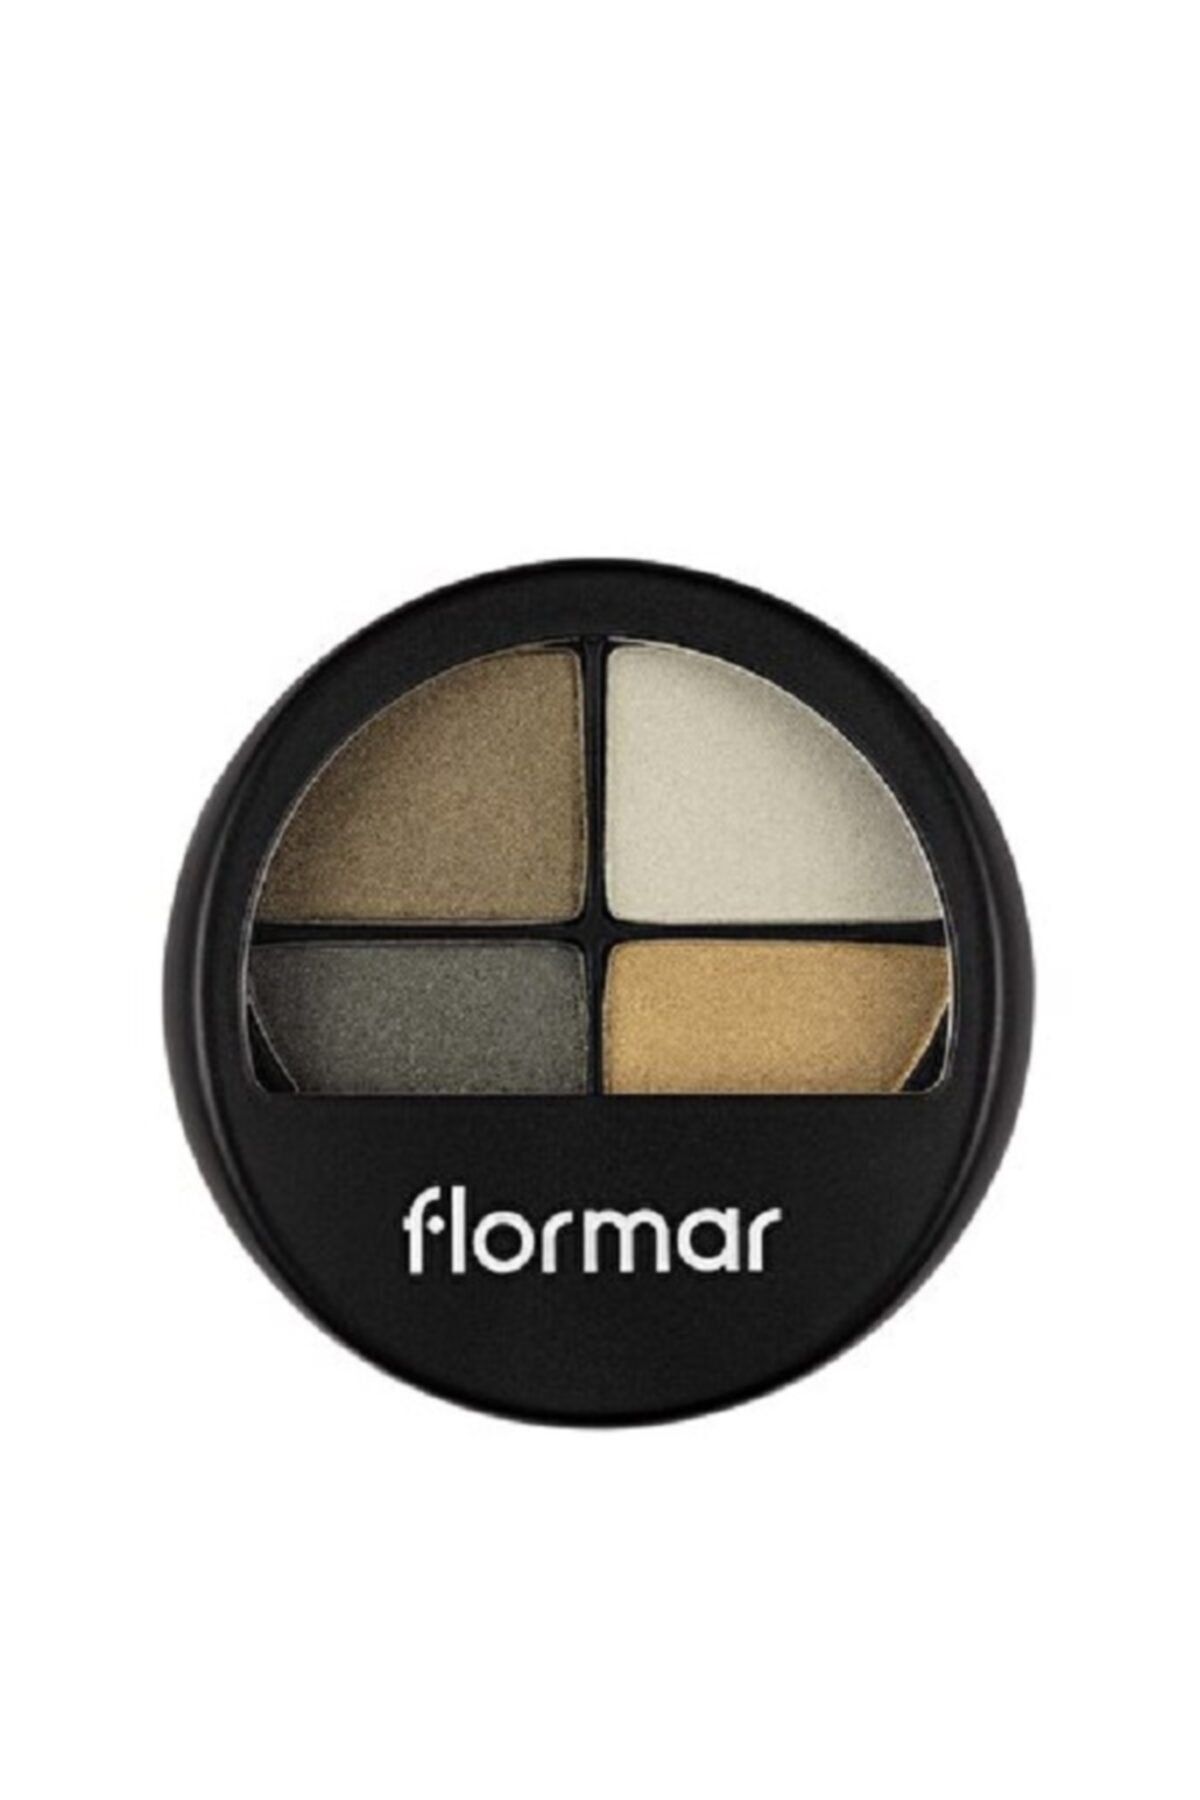 Flormar Quartet Eyeshadow Sedefli Bitişe Sahip 4'lü Göz Farı | 12 G 403
green Garden